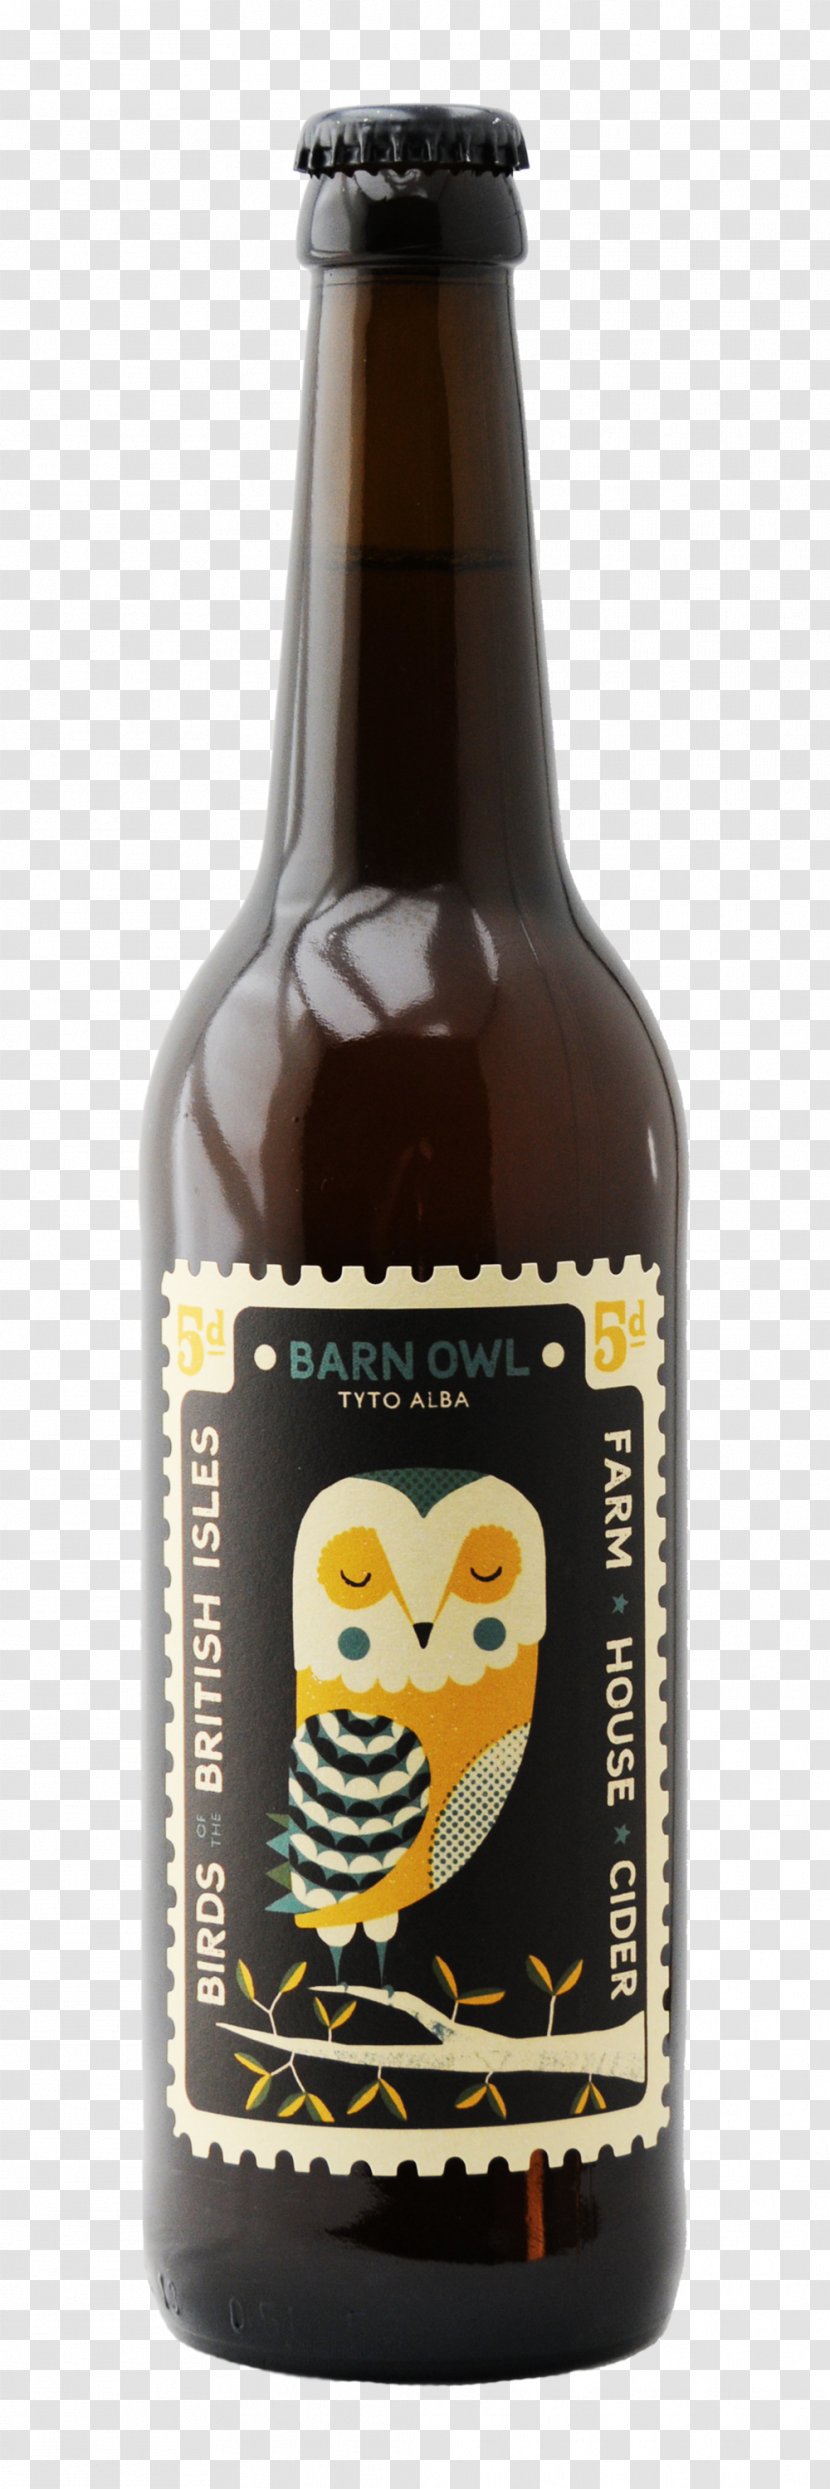 Beer Bottle Ale Cider Perry Wine - Sparkling Transparent PNG